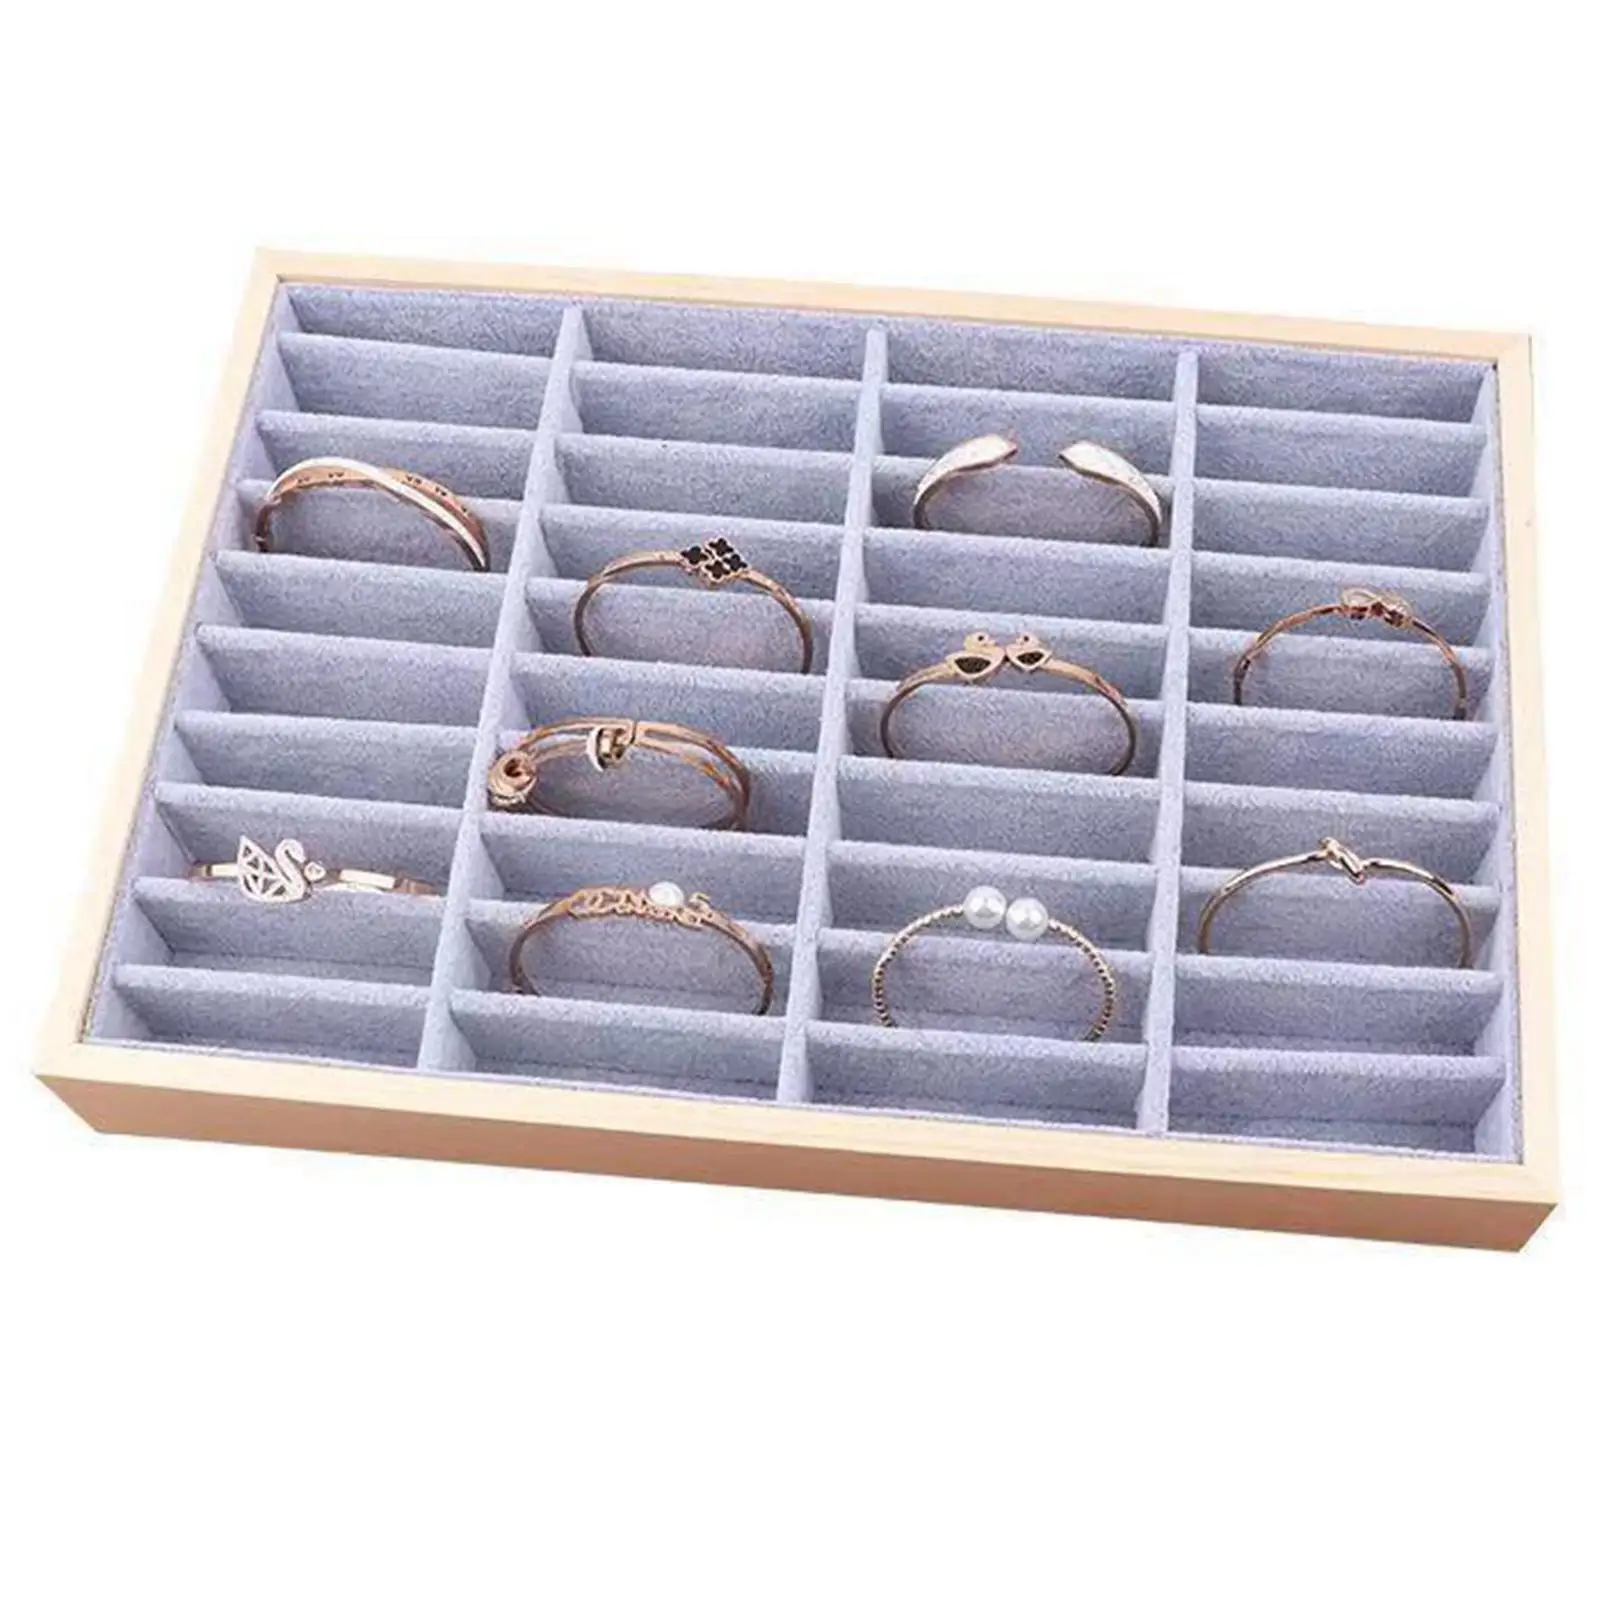 Jewelry Display Case Bracelet Earring Storage Box Organizer for Dresser